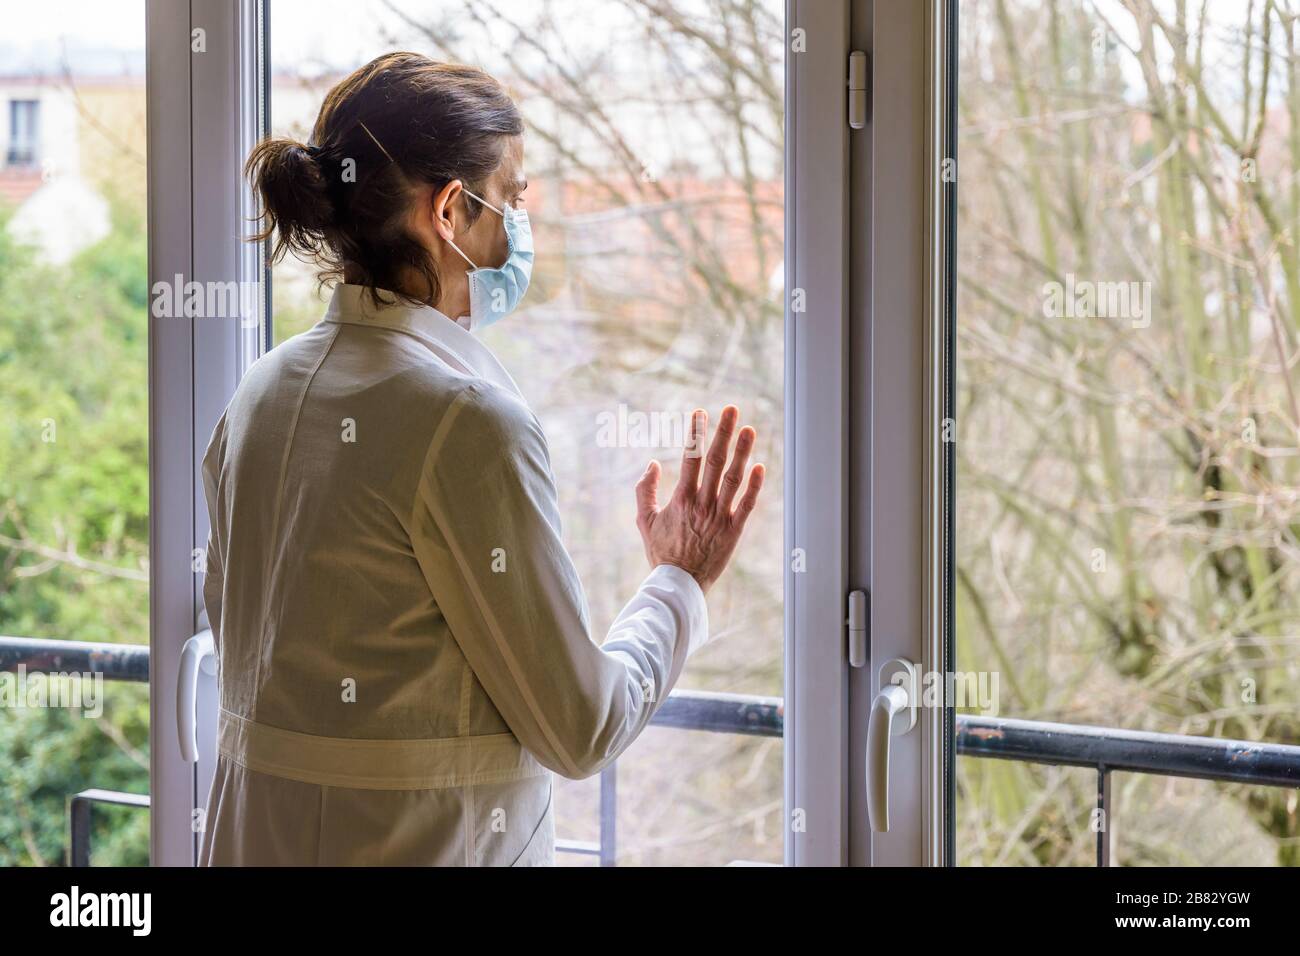 Una enfermera que lleva una máscara médica y un abrigo blanco, está de pie inactiva frente a una ventana cerrada, mirando hacia el espacio. Foto de stock